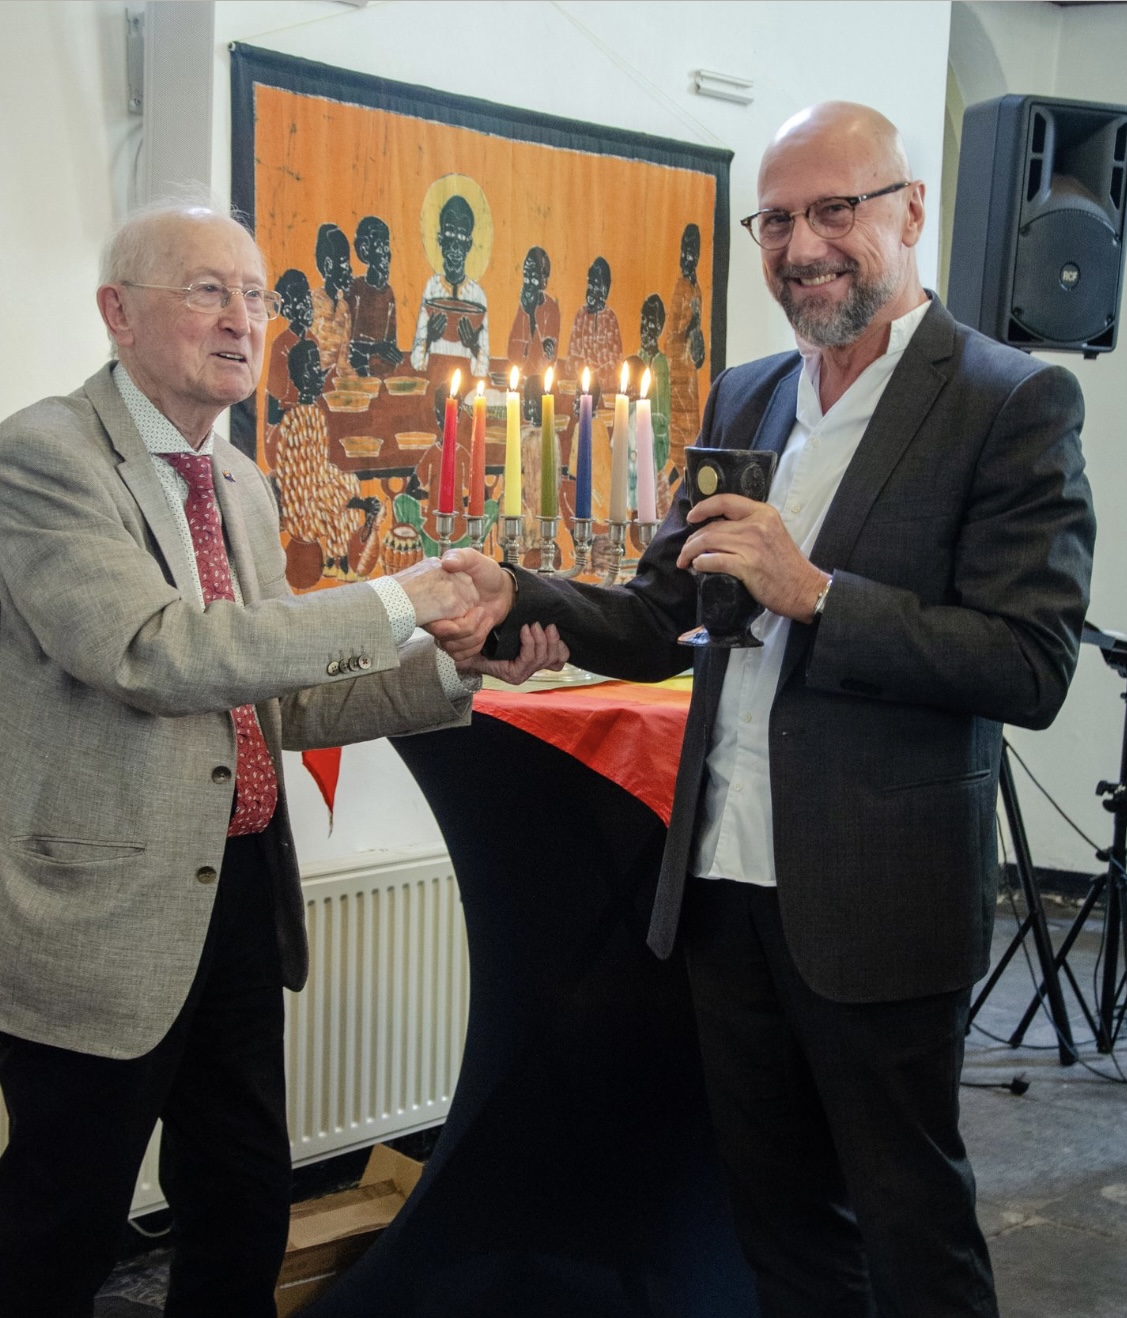 Priester Jan Veldt reikt de Graalbokaal Award uit aan Willy Bombeek.